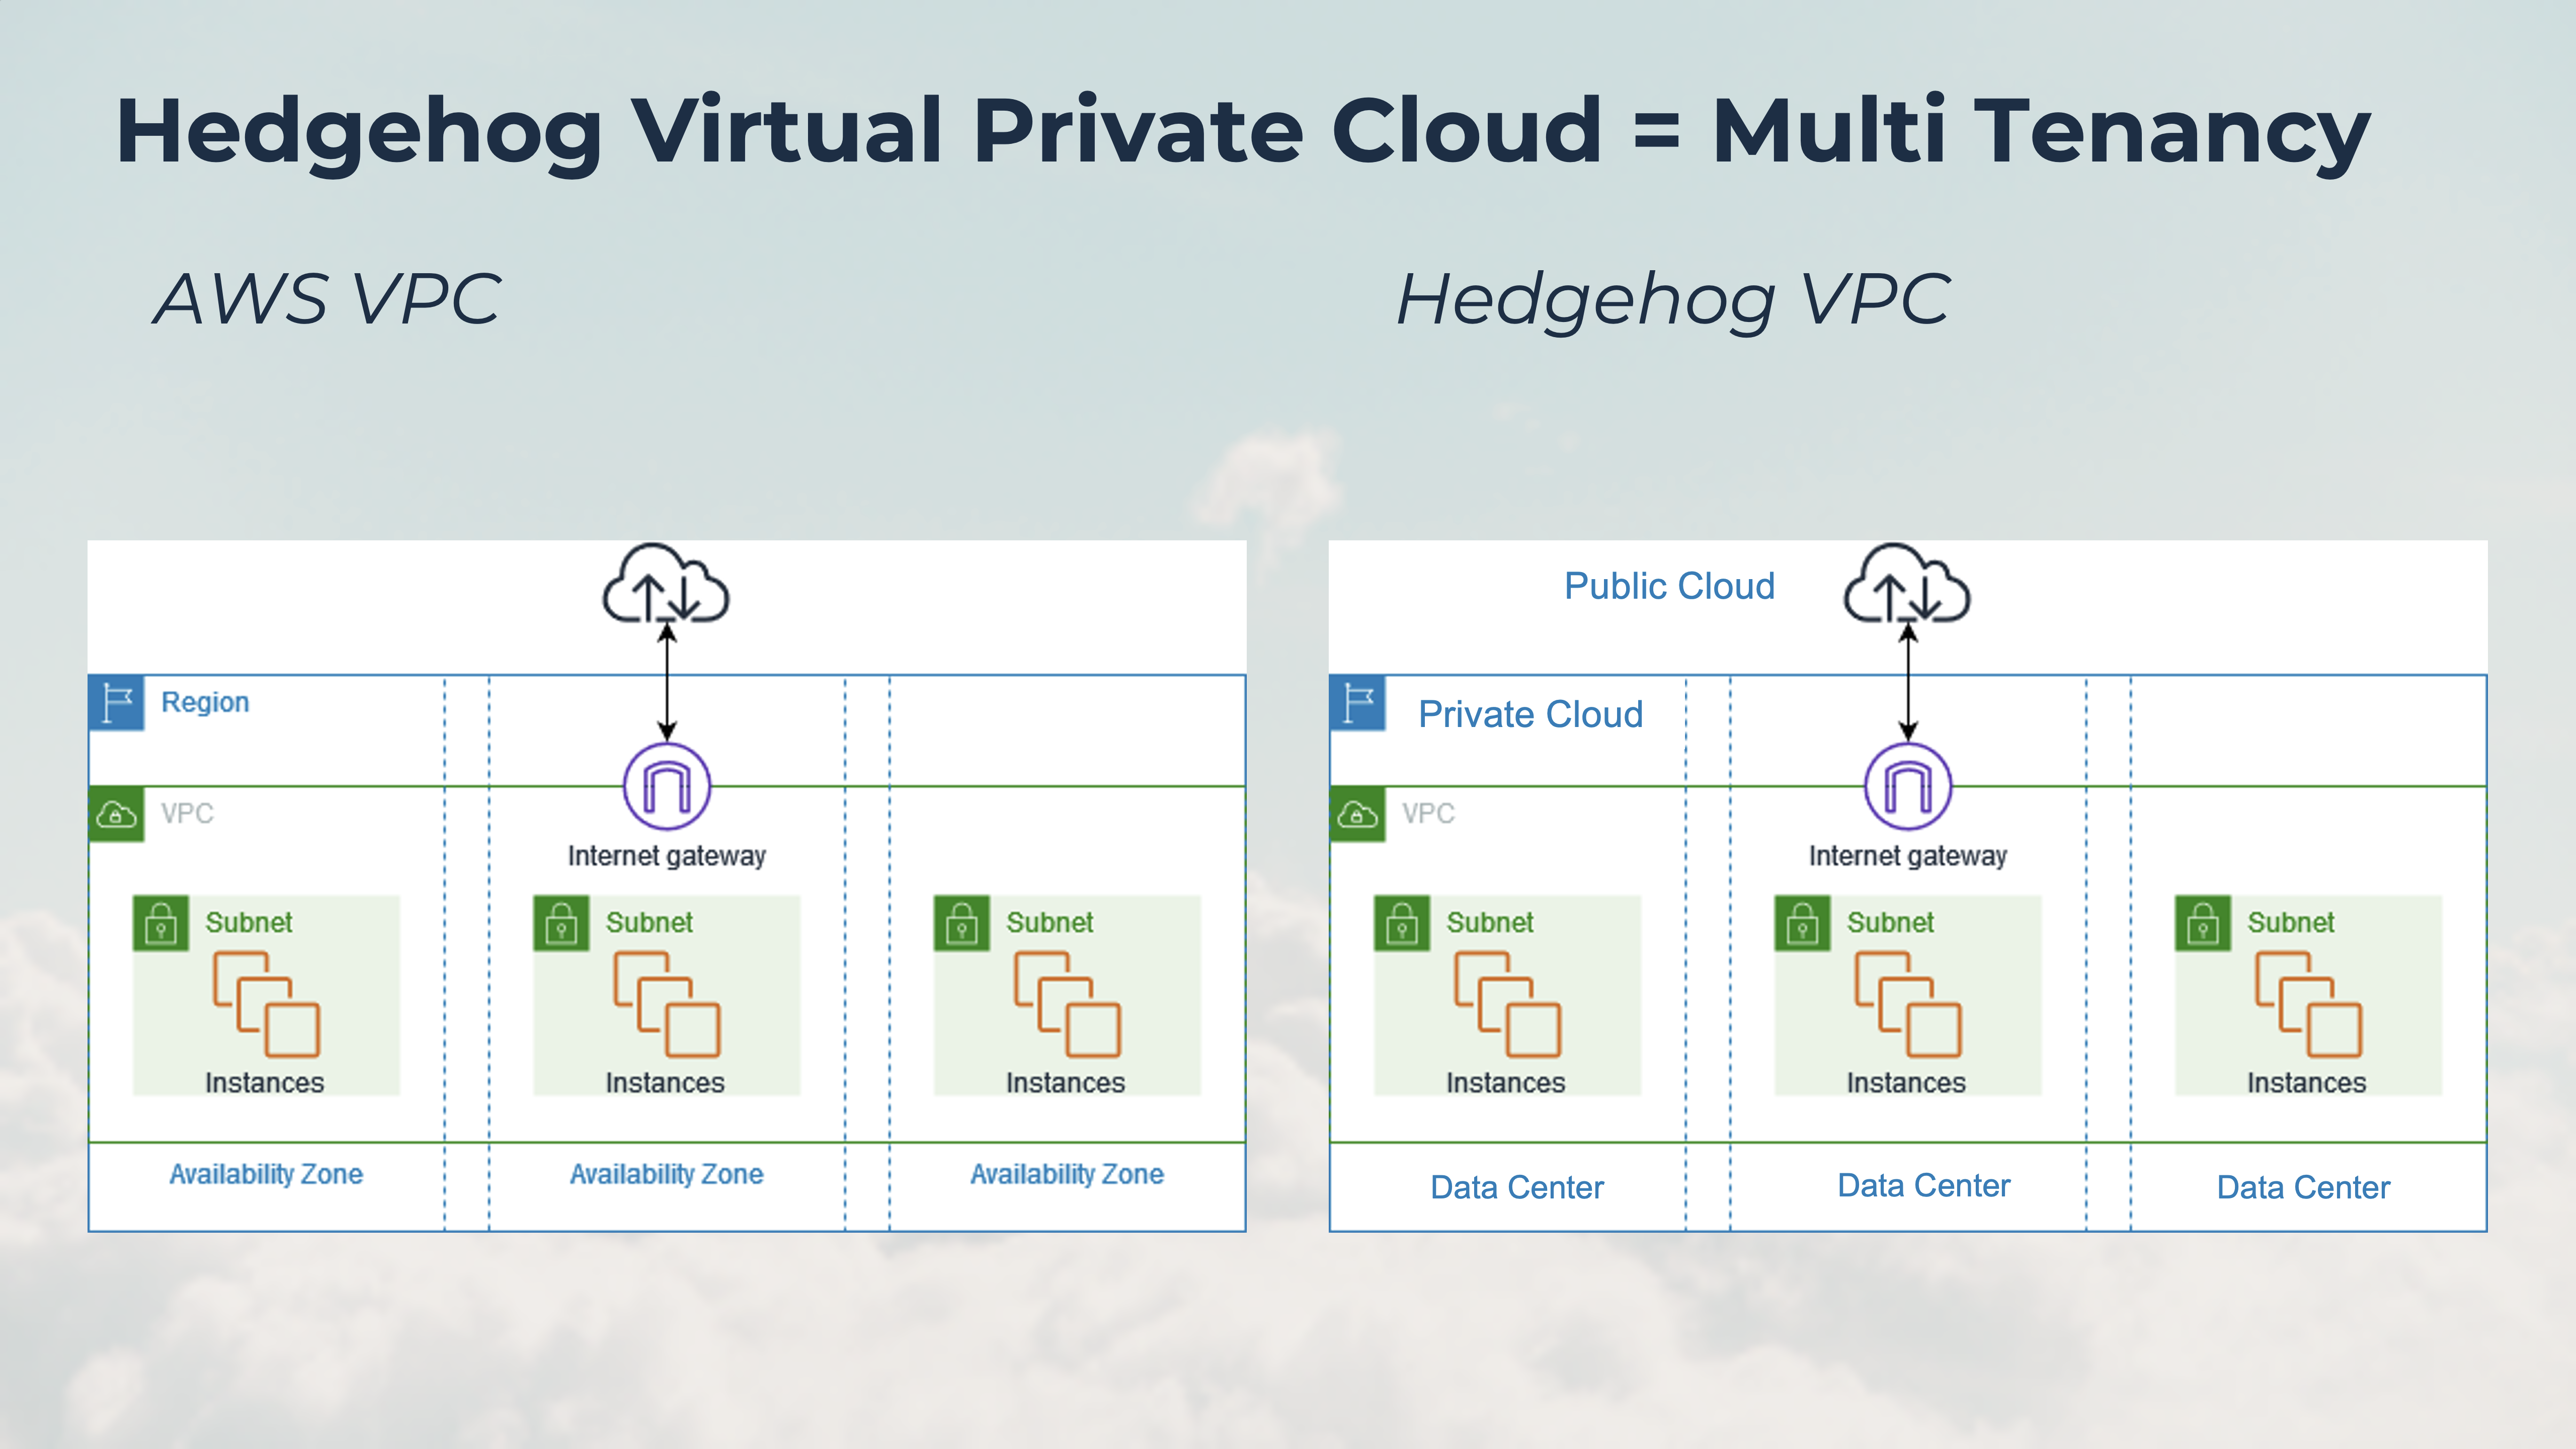 Esquema de Hedgehog Virtual Private Cloud comparado con AWS Virtual Private Cloud. Hedgehog VPC es lo mismo que AWS VPC, pero se ejecuta en la nube privada donde los centros de datos son los mismos que las zonas de disponibilidad y la puerta de enlace VPC conecta la nube privada a la nube pública.